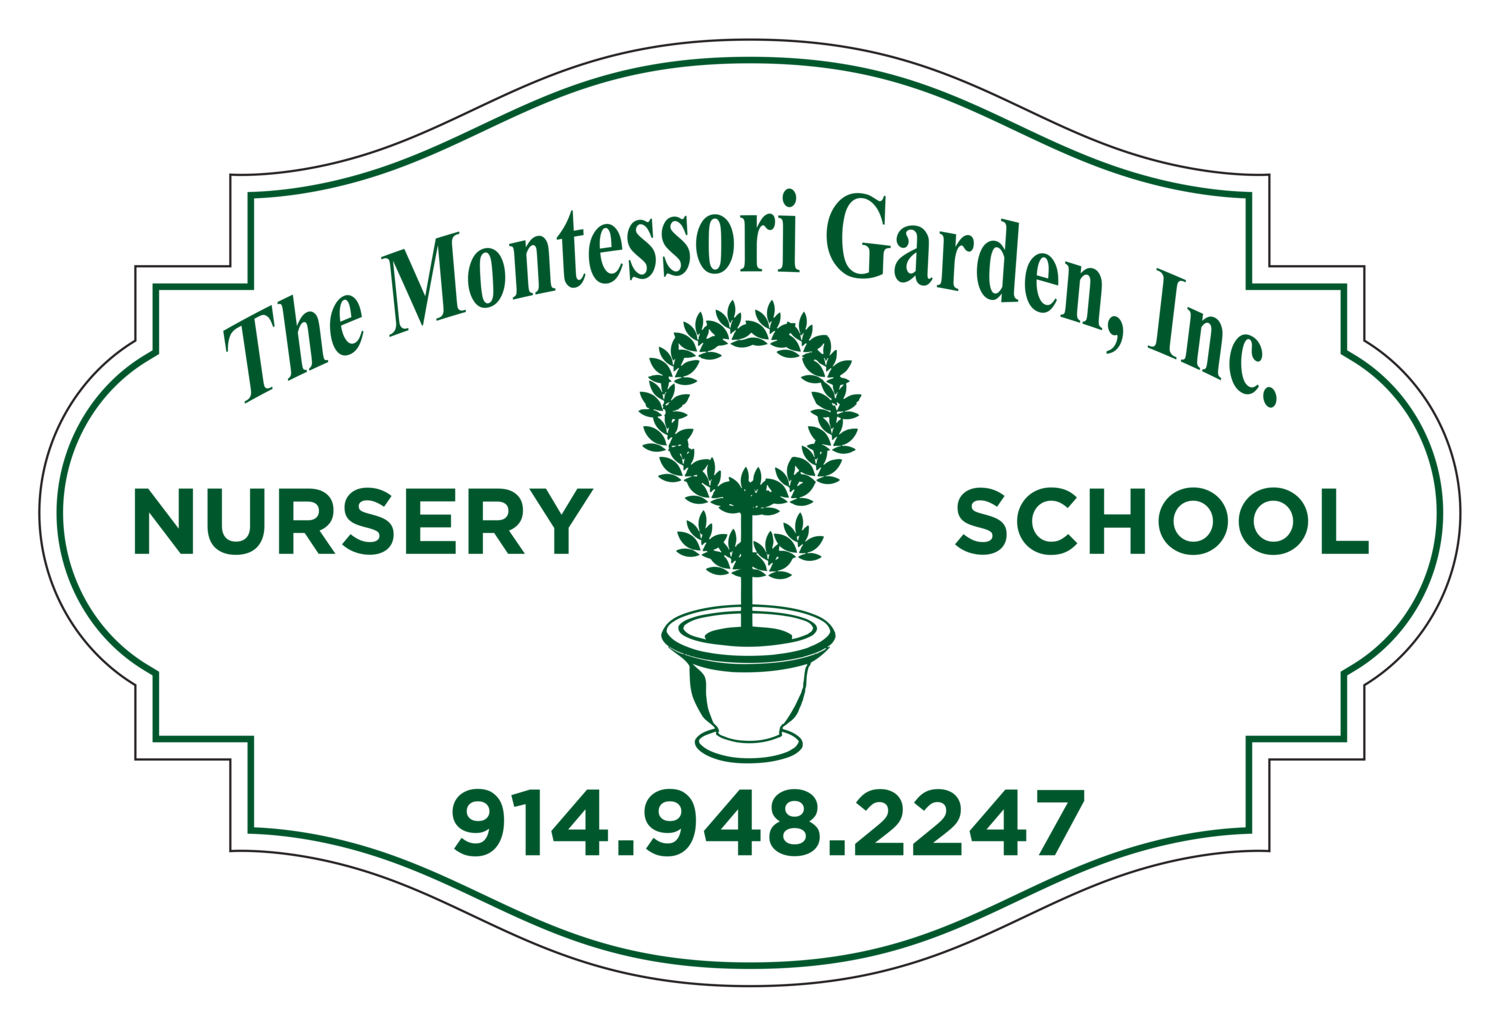 The Montessori Garden, Inc. 